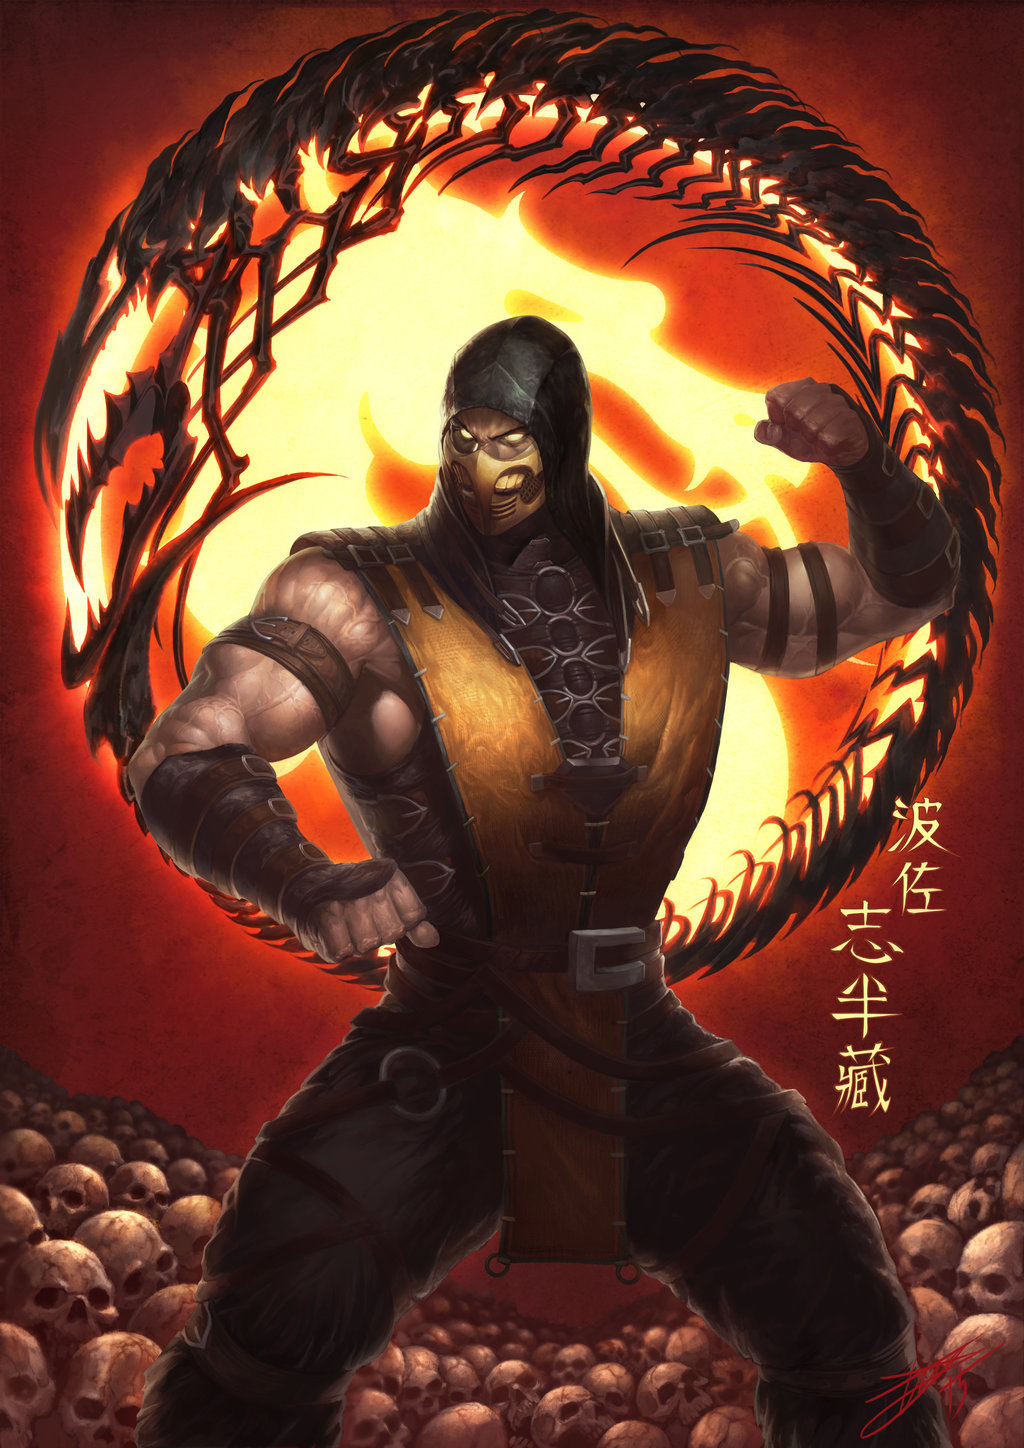 Mortal Kombat Art - ID: 85849 - Art Abyss